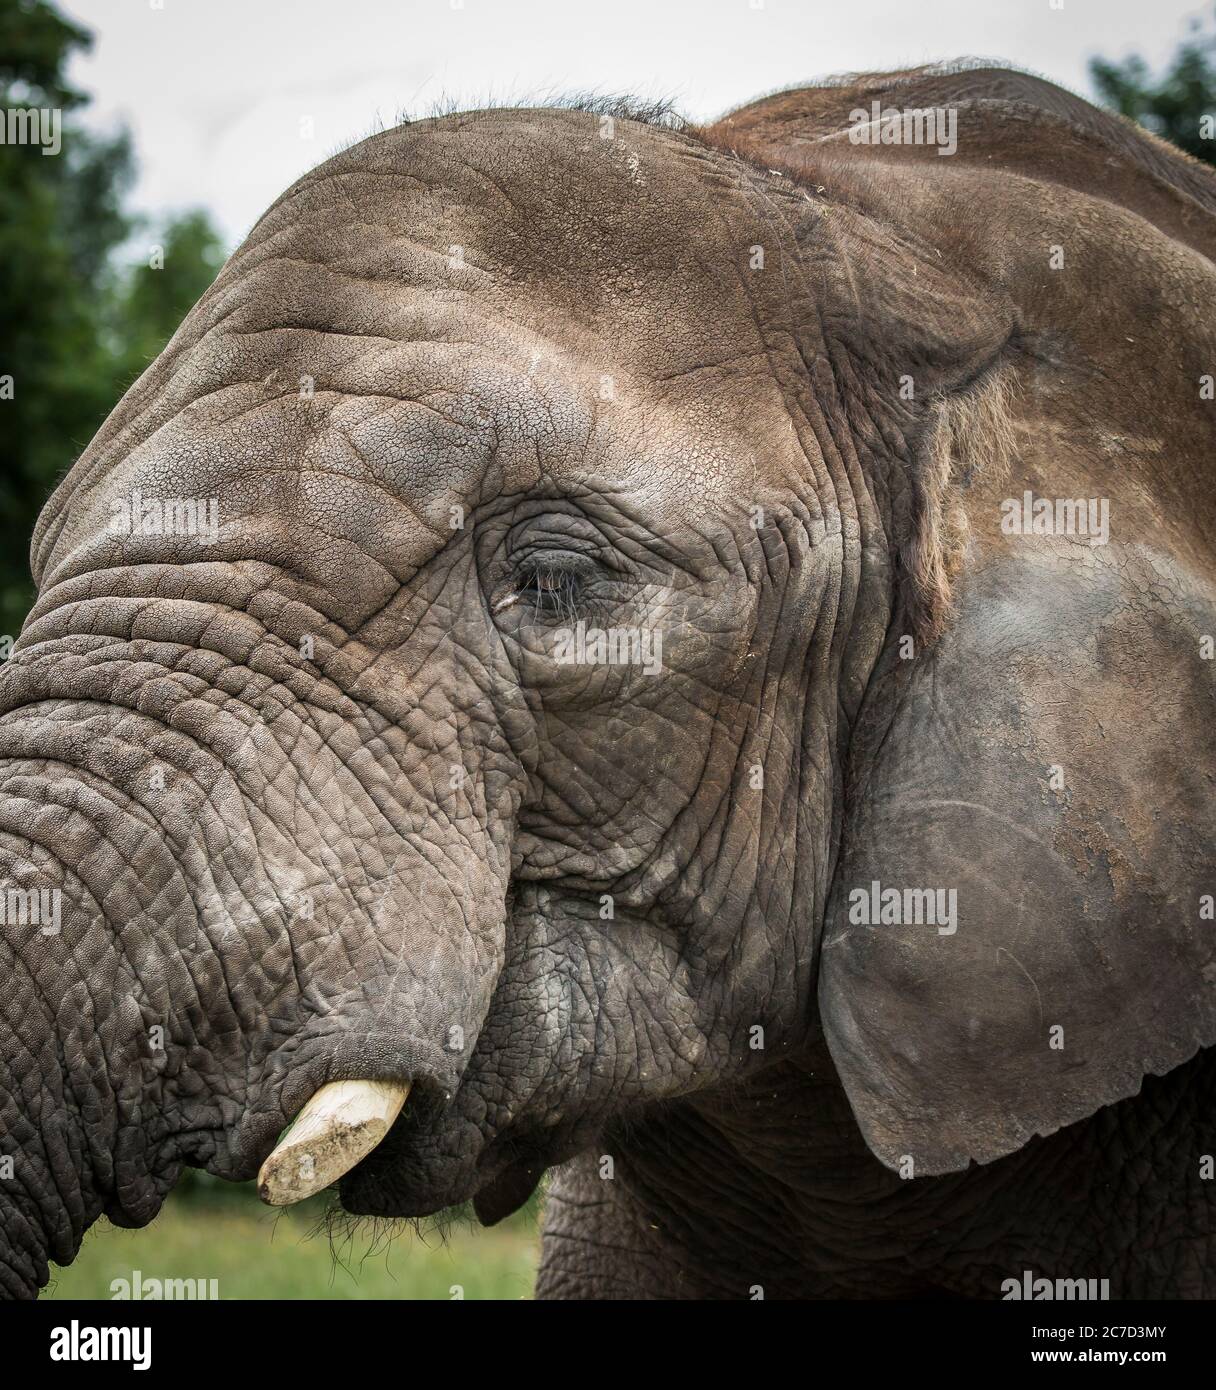 Detailed, side view close up of African elephant animal face (Loxodonta africana) isolated outdoors at West Midland Safari Park UK. Wildlife captivity. Stock Photo